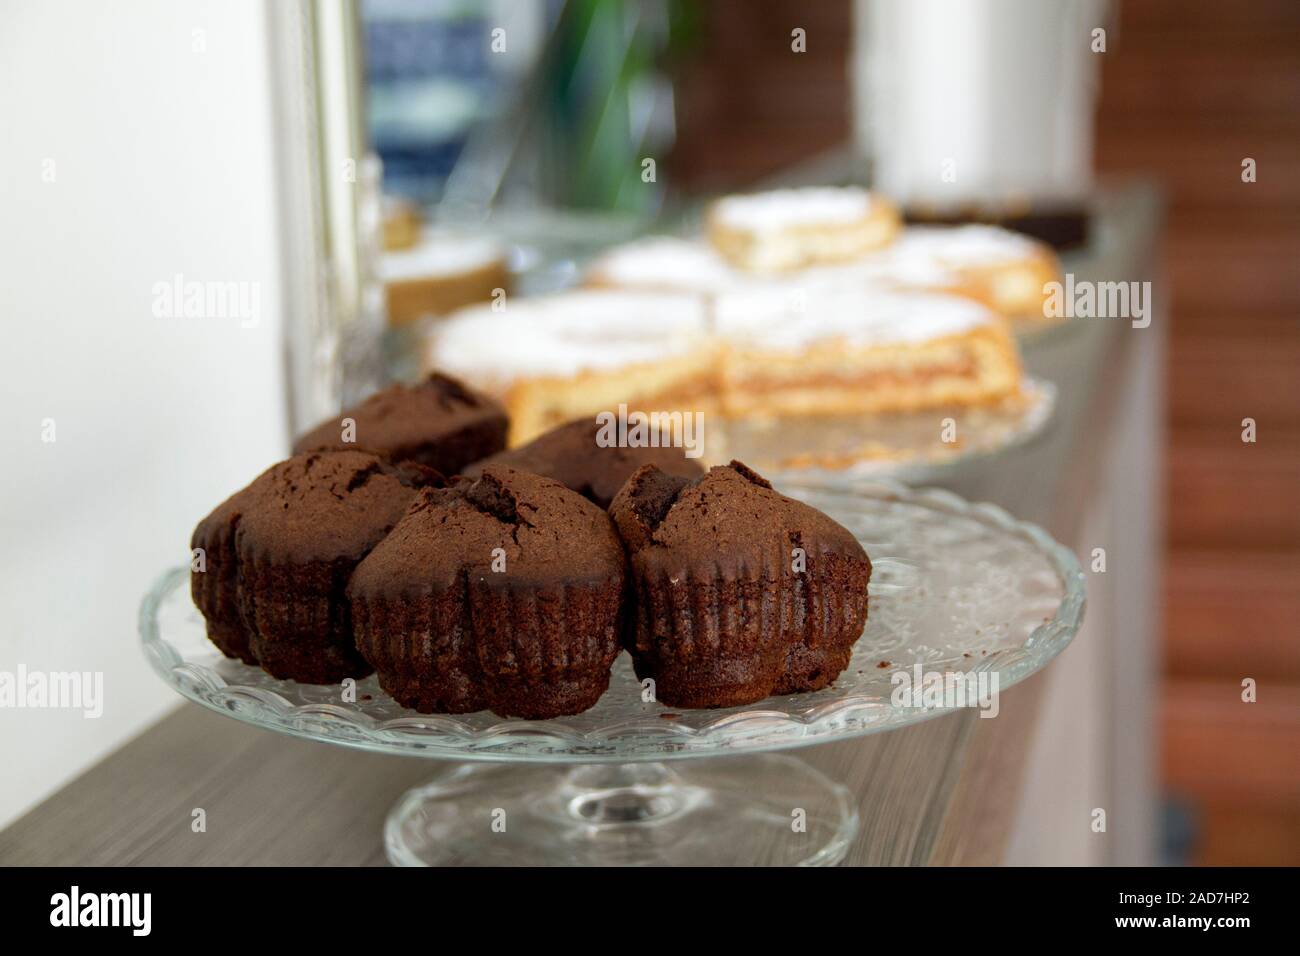 Schokolade in Herzform Muffins auf einem Glas Kuchen stehen mit unscharfen Apple Pies in den Hintergrund. Stockfoto